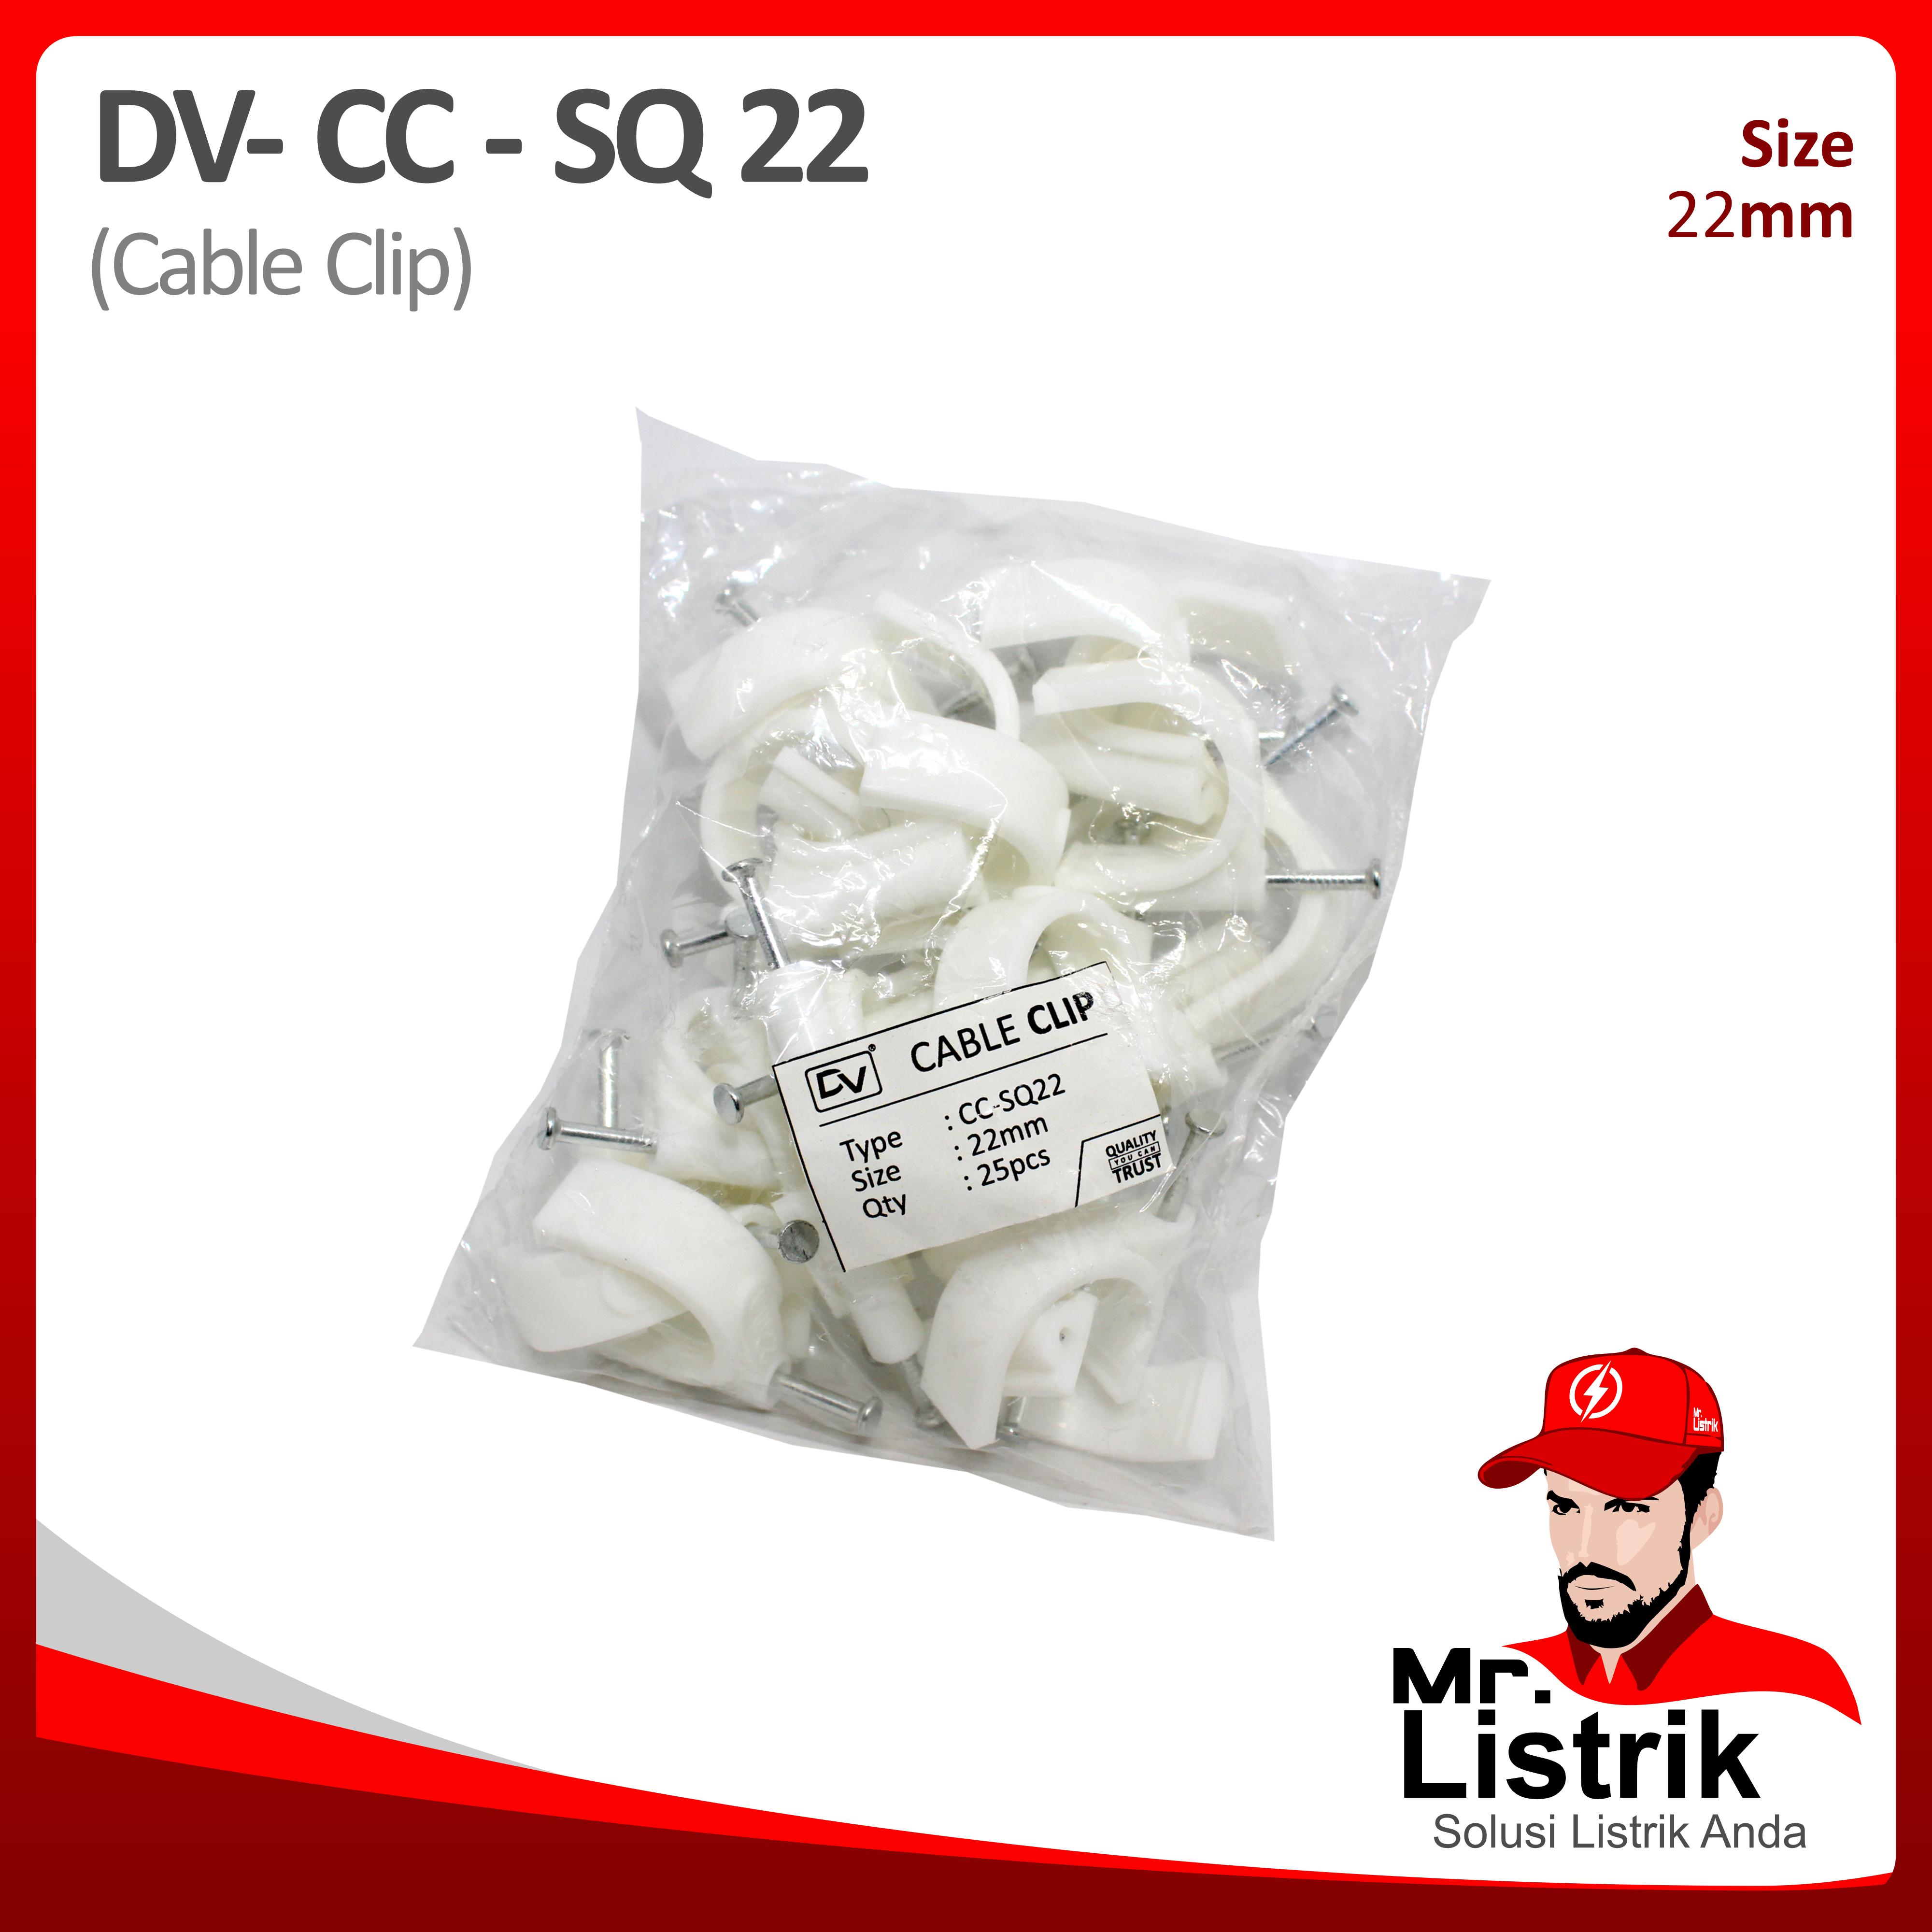 Cable Clip 22mm DV CC-SQ 22